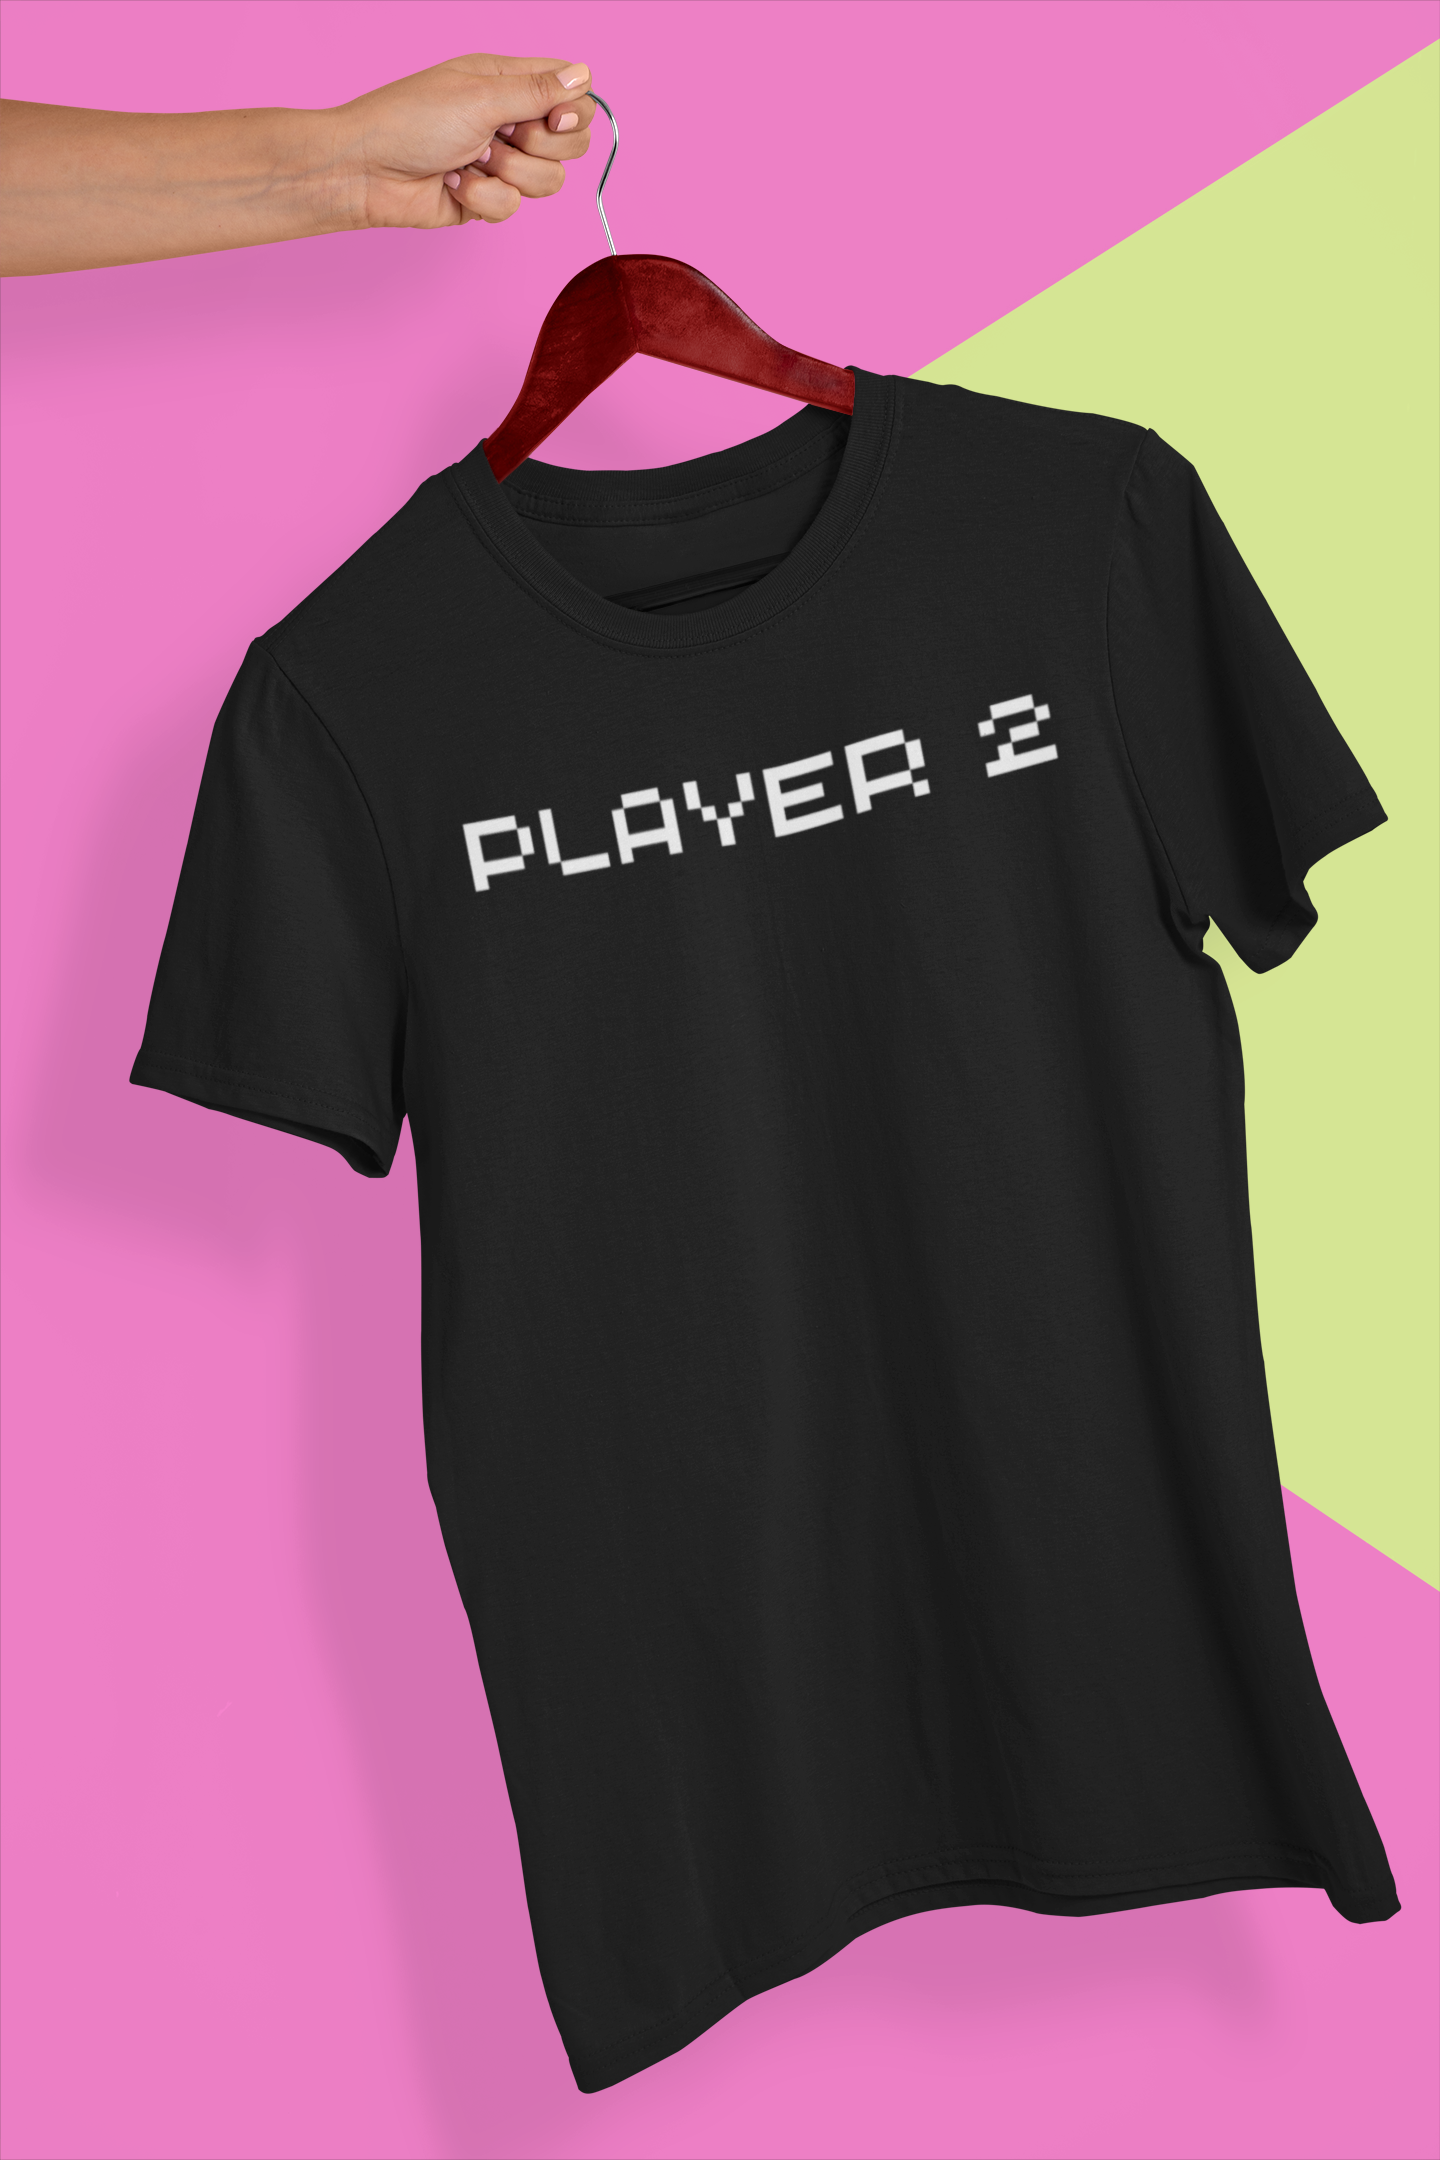 Player 2 Short-Sleeve T-Shirt